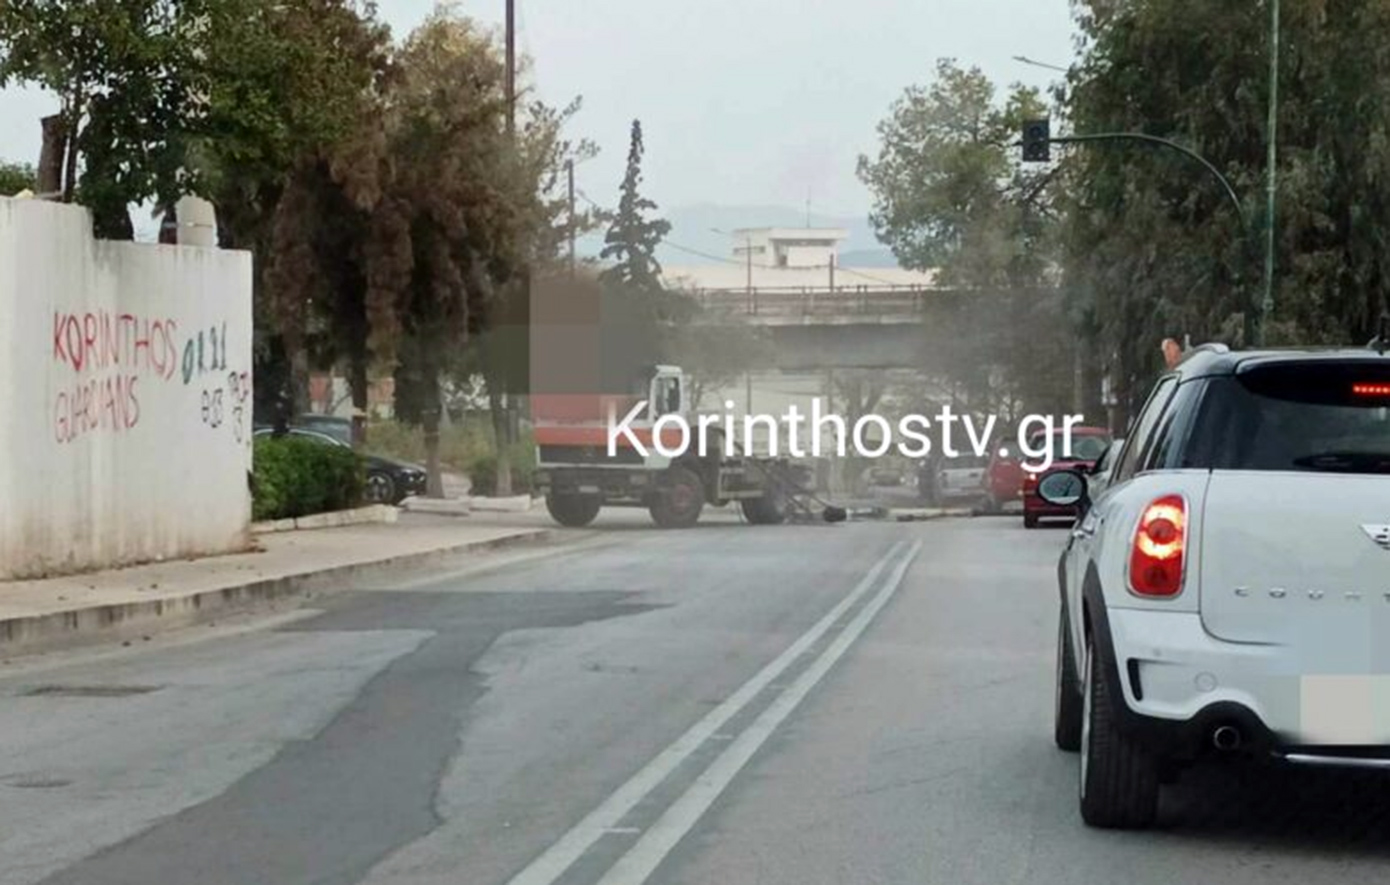 Γερανός φορτηγού χτύπησε σε γέφυρα, έσπασε και κατέληξε σε διερχόμενα οχήματα στην Κόρινθο